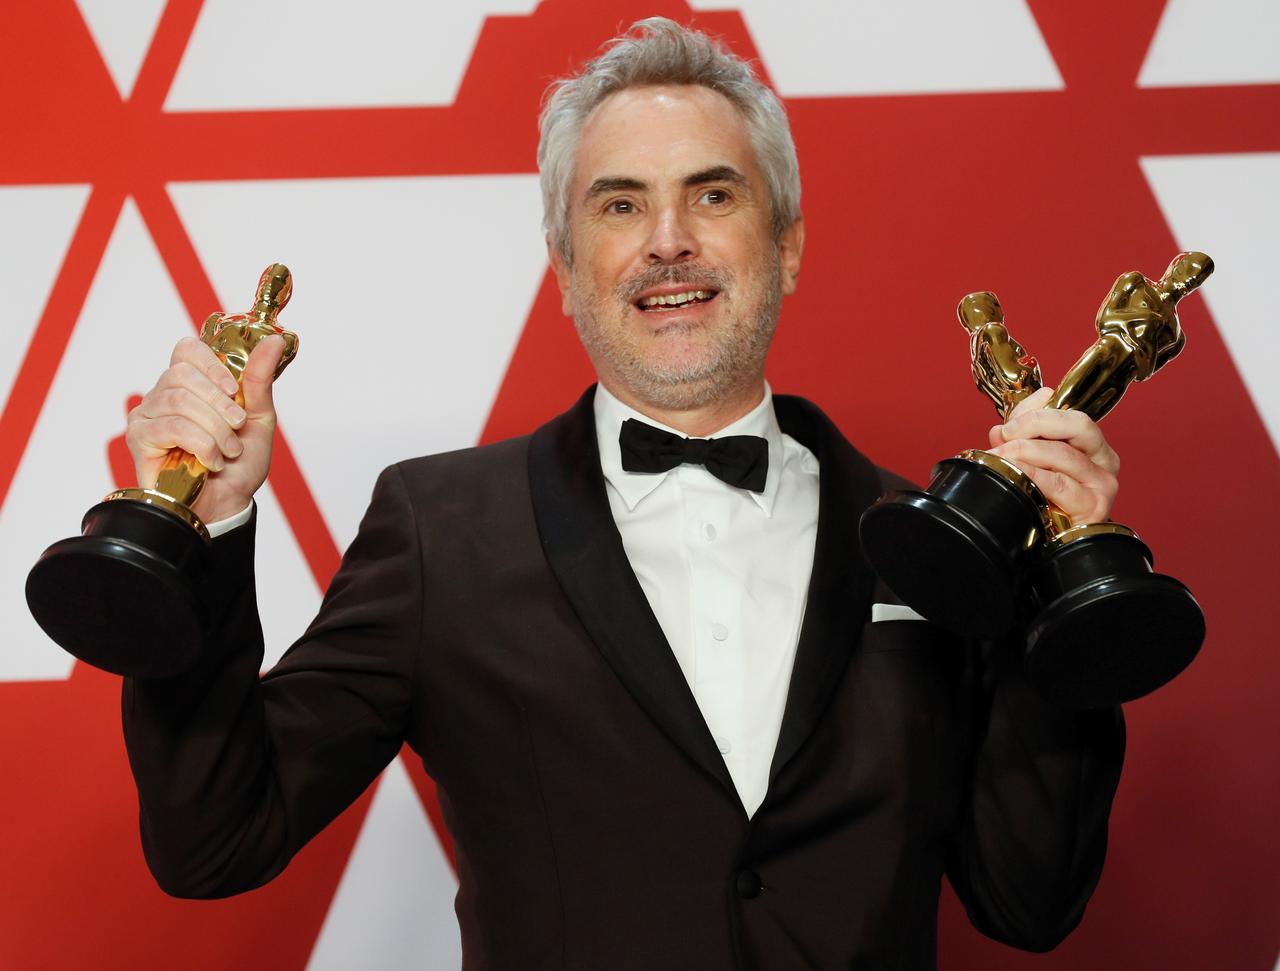 El rebelde del cine mexicano Alfonso Cuarón llega a los 60 años logrando un gran éxito con los filmes que son tan comerciales, como personales. Y después de 'Roma' (2019) se vislumbra un camino más relajado y creativo para el afamado director.